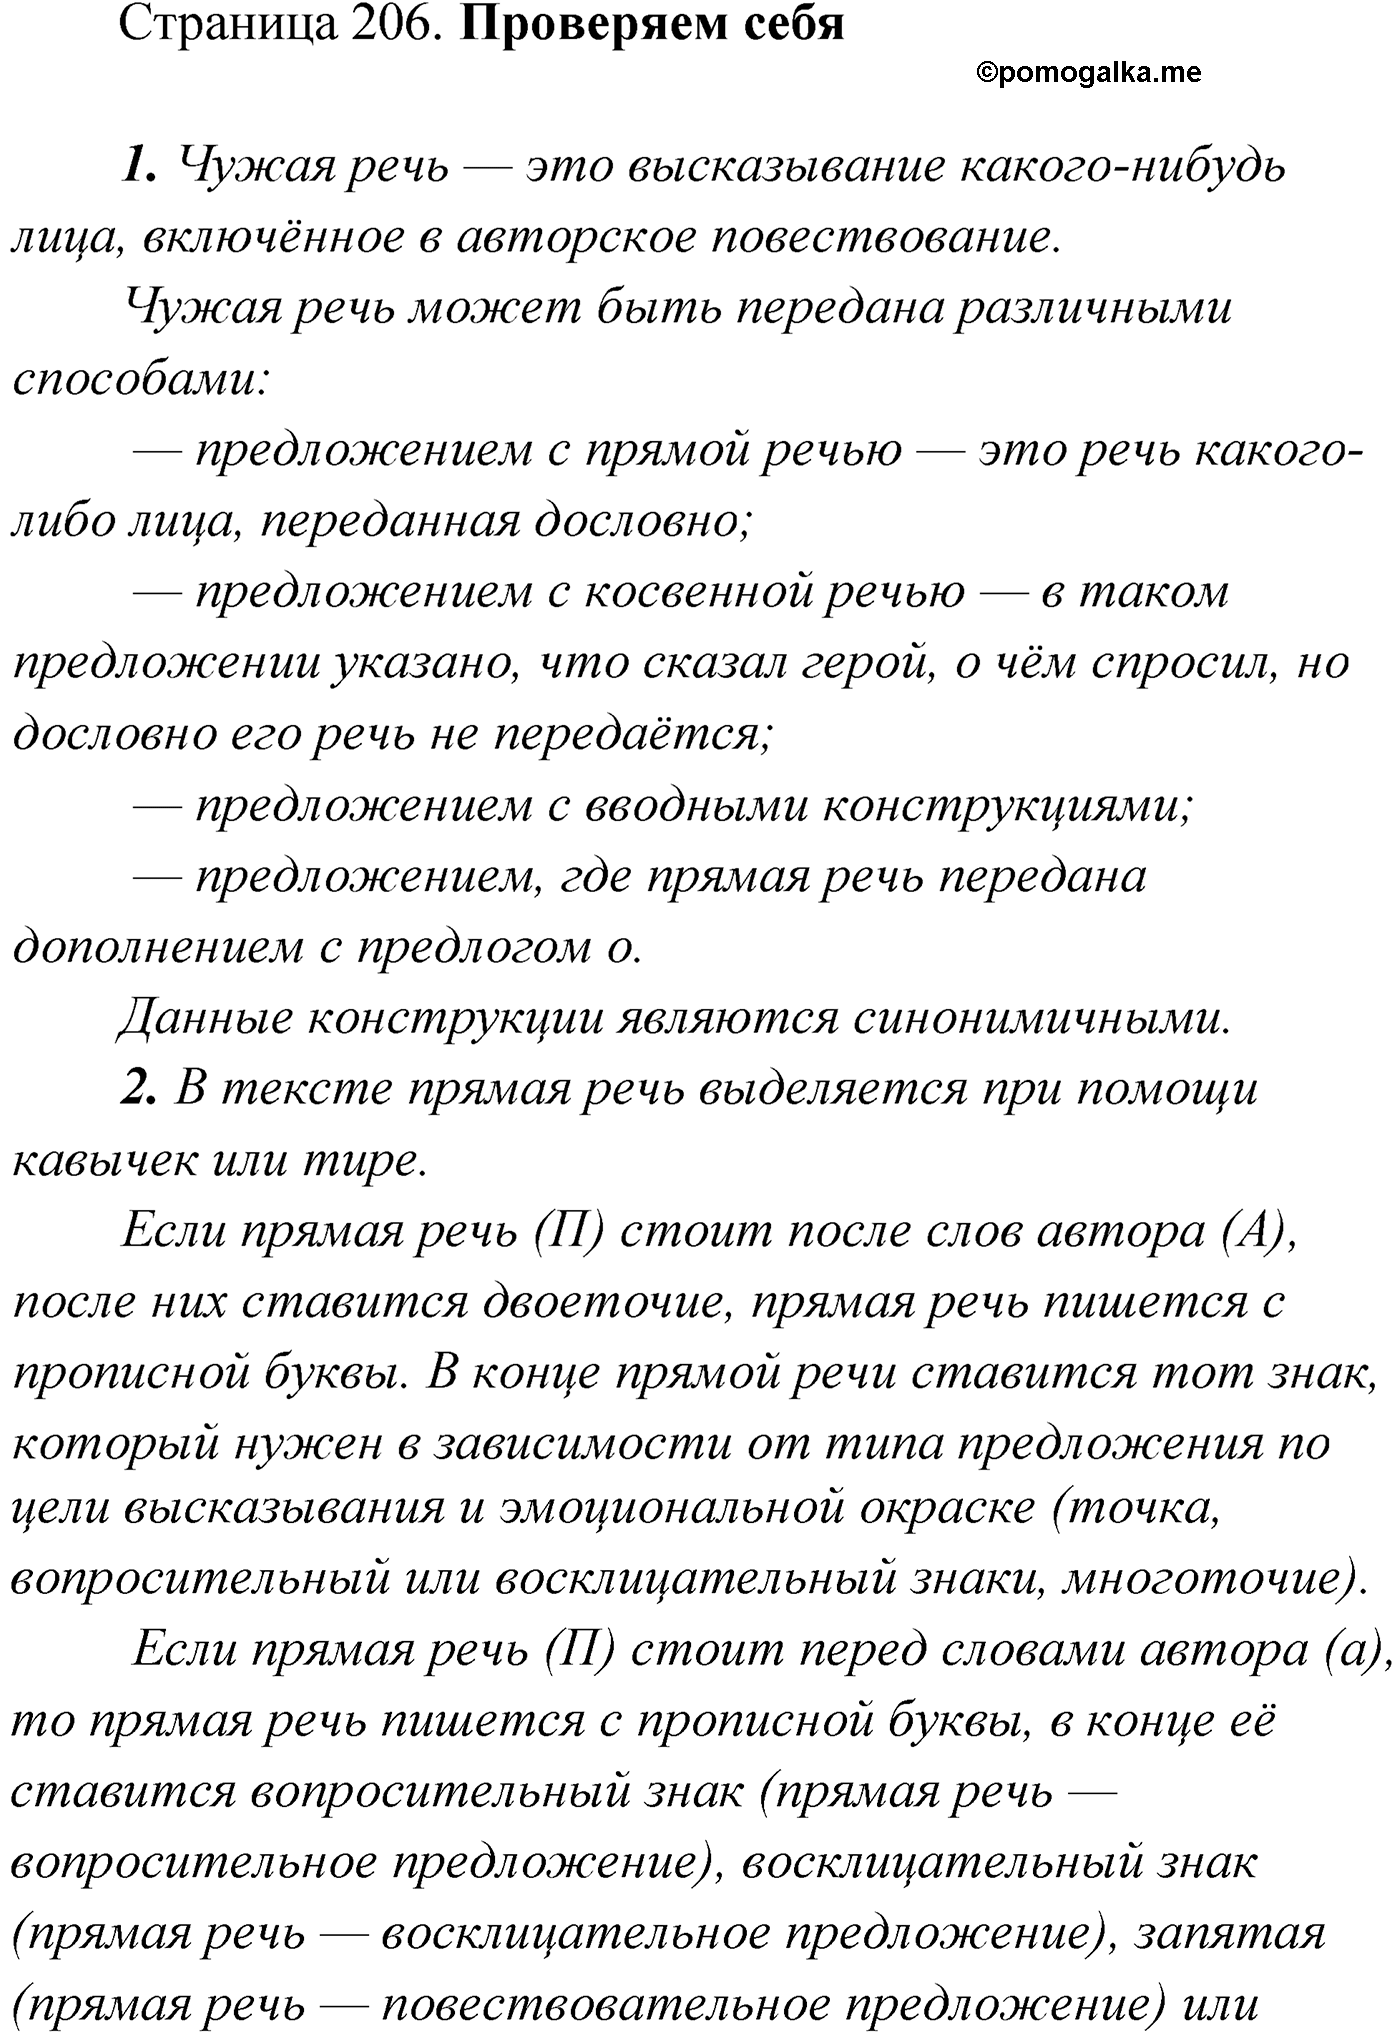 Проверь себя, Страница 206 русский язык 9 класс Мурина 2019 год